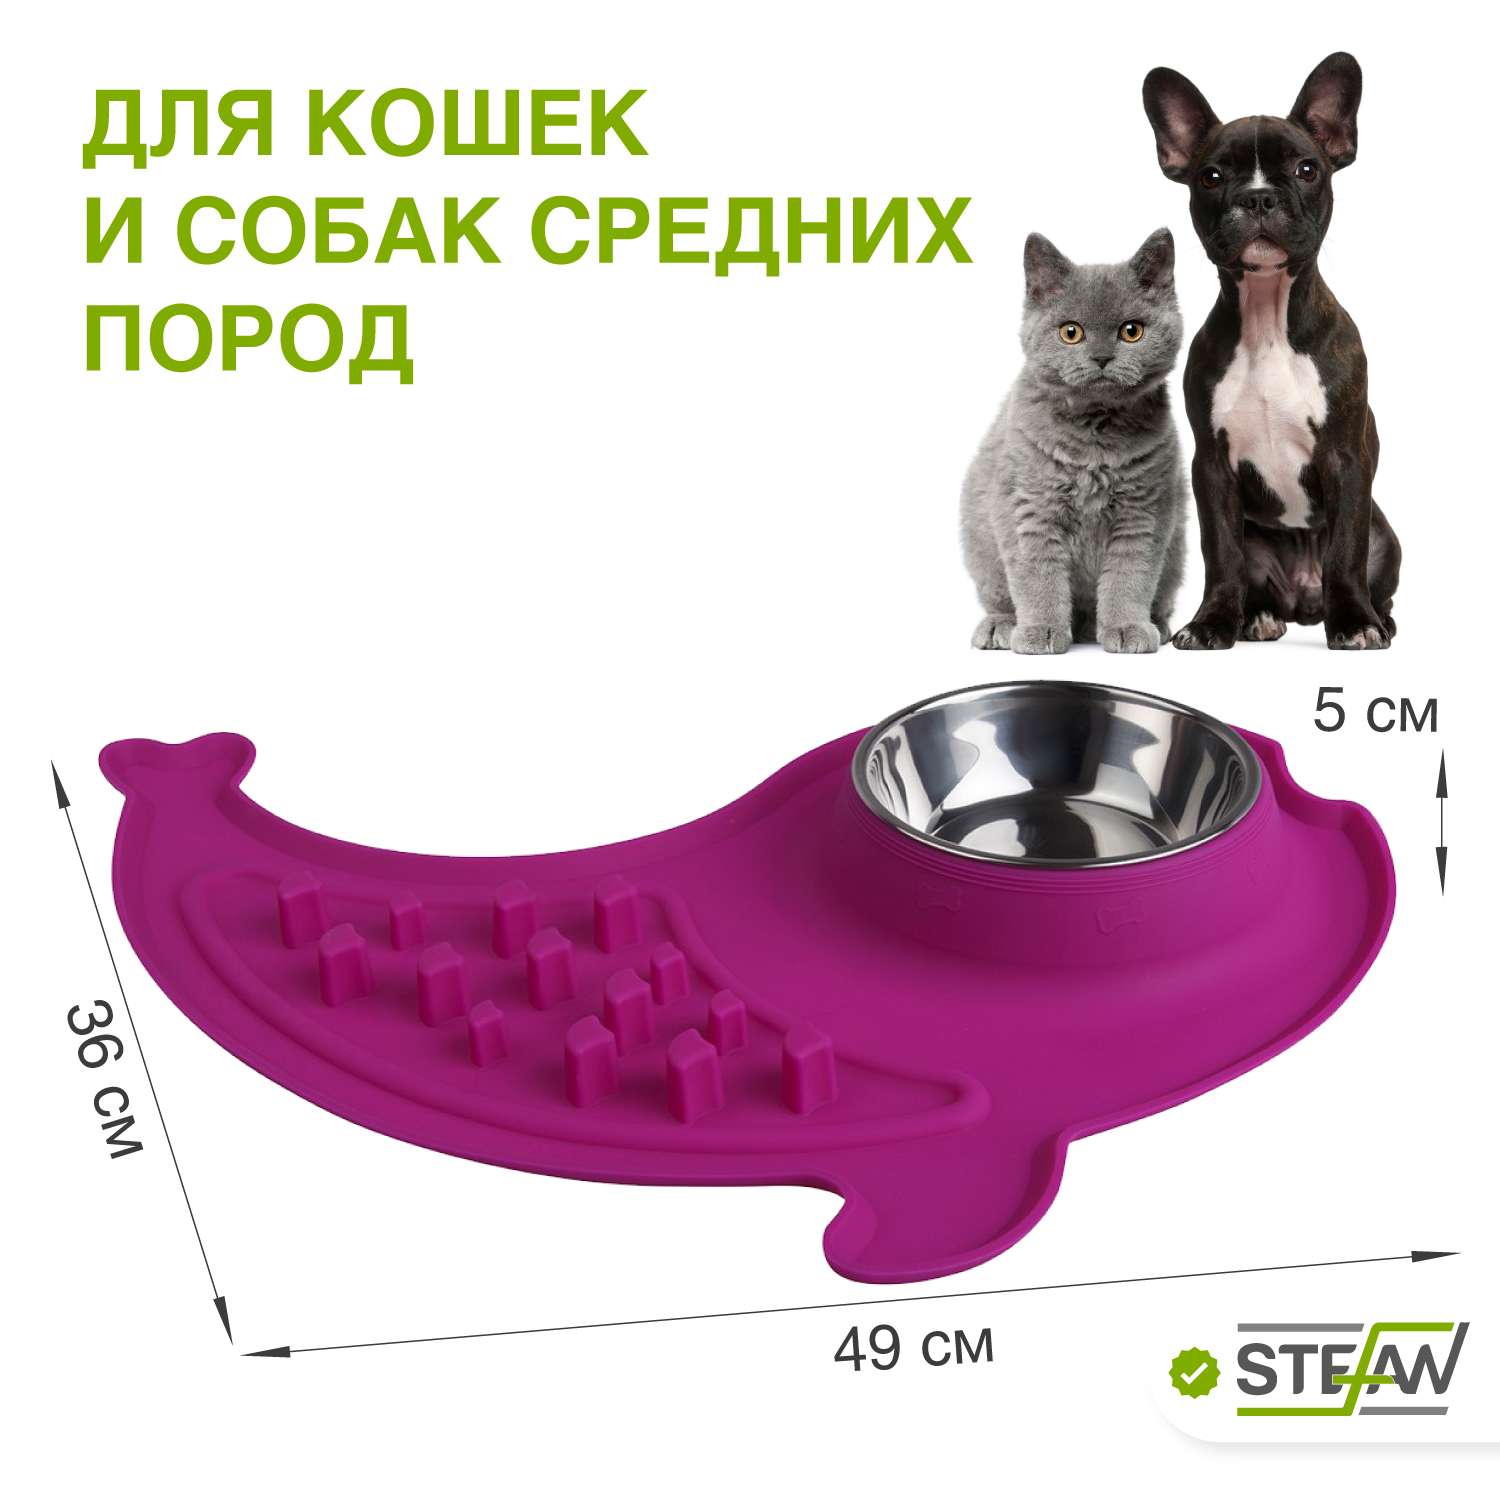 Миска для кошек Stefan двойная с силиконовым основанием с интерактивной зоной размер M 1х340мл пурпурная - фото 2